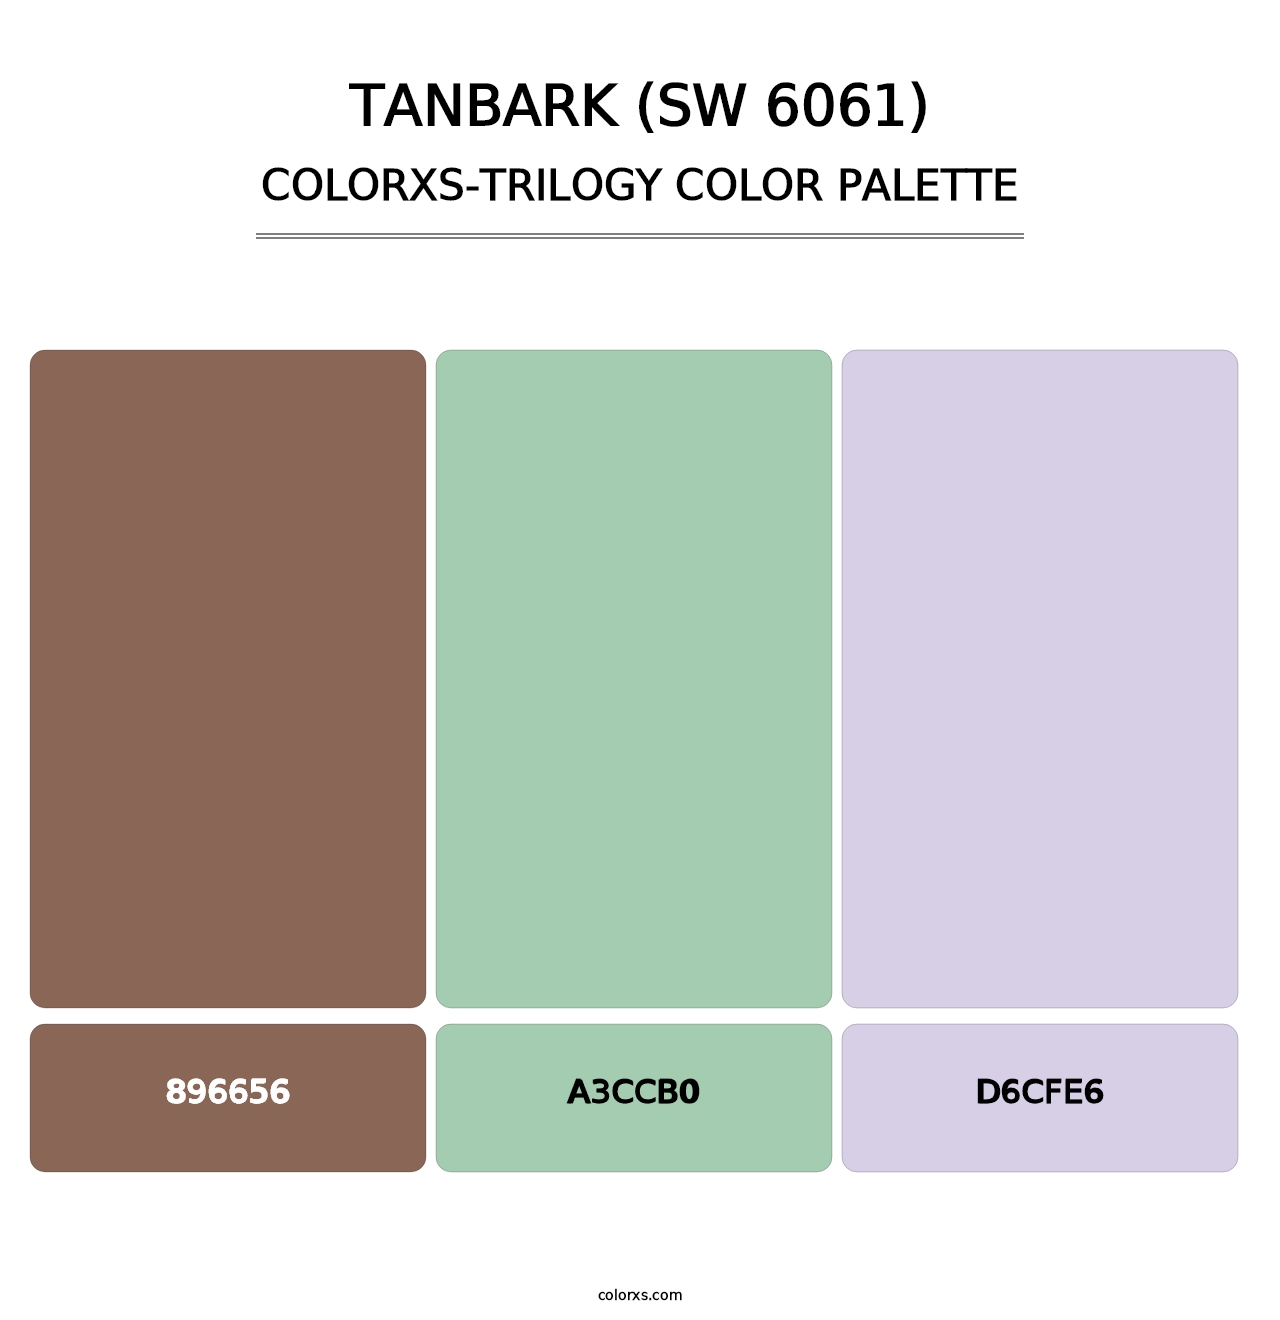 Tanbark (SW 6061) - Colorxs Trilogy Palette